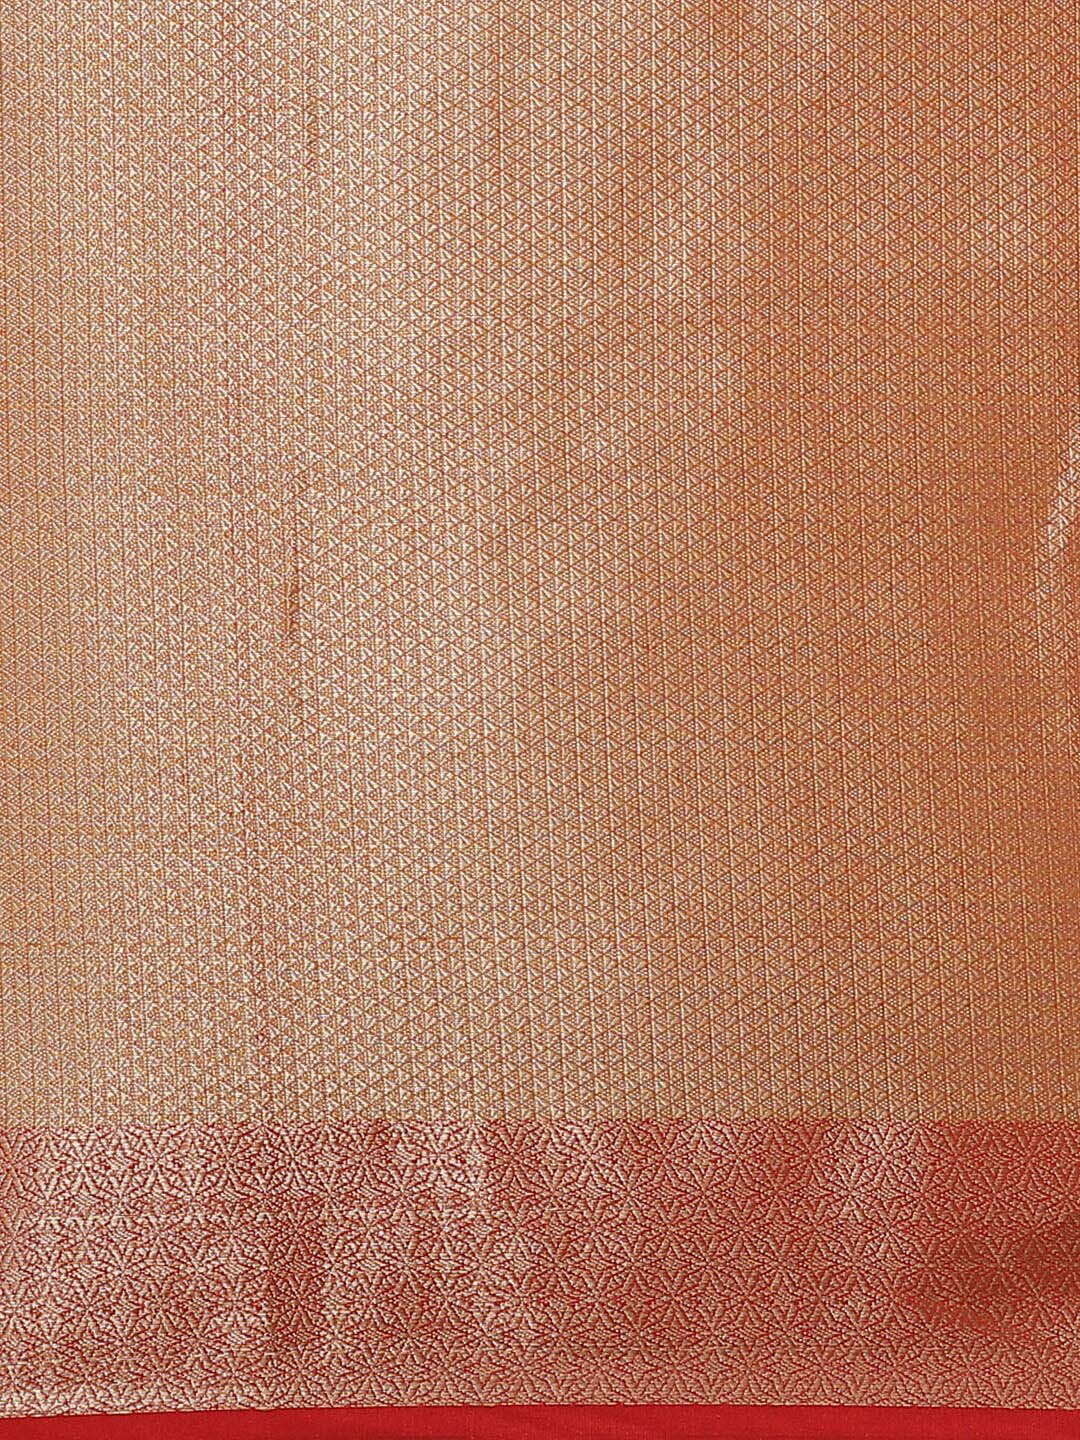 Indethnic Banarasi Fuchsia Woven Design Daily Wear Saree - Saree Detail View